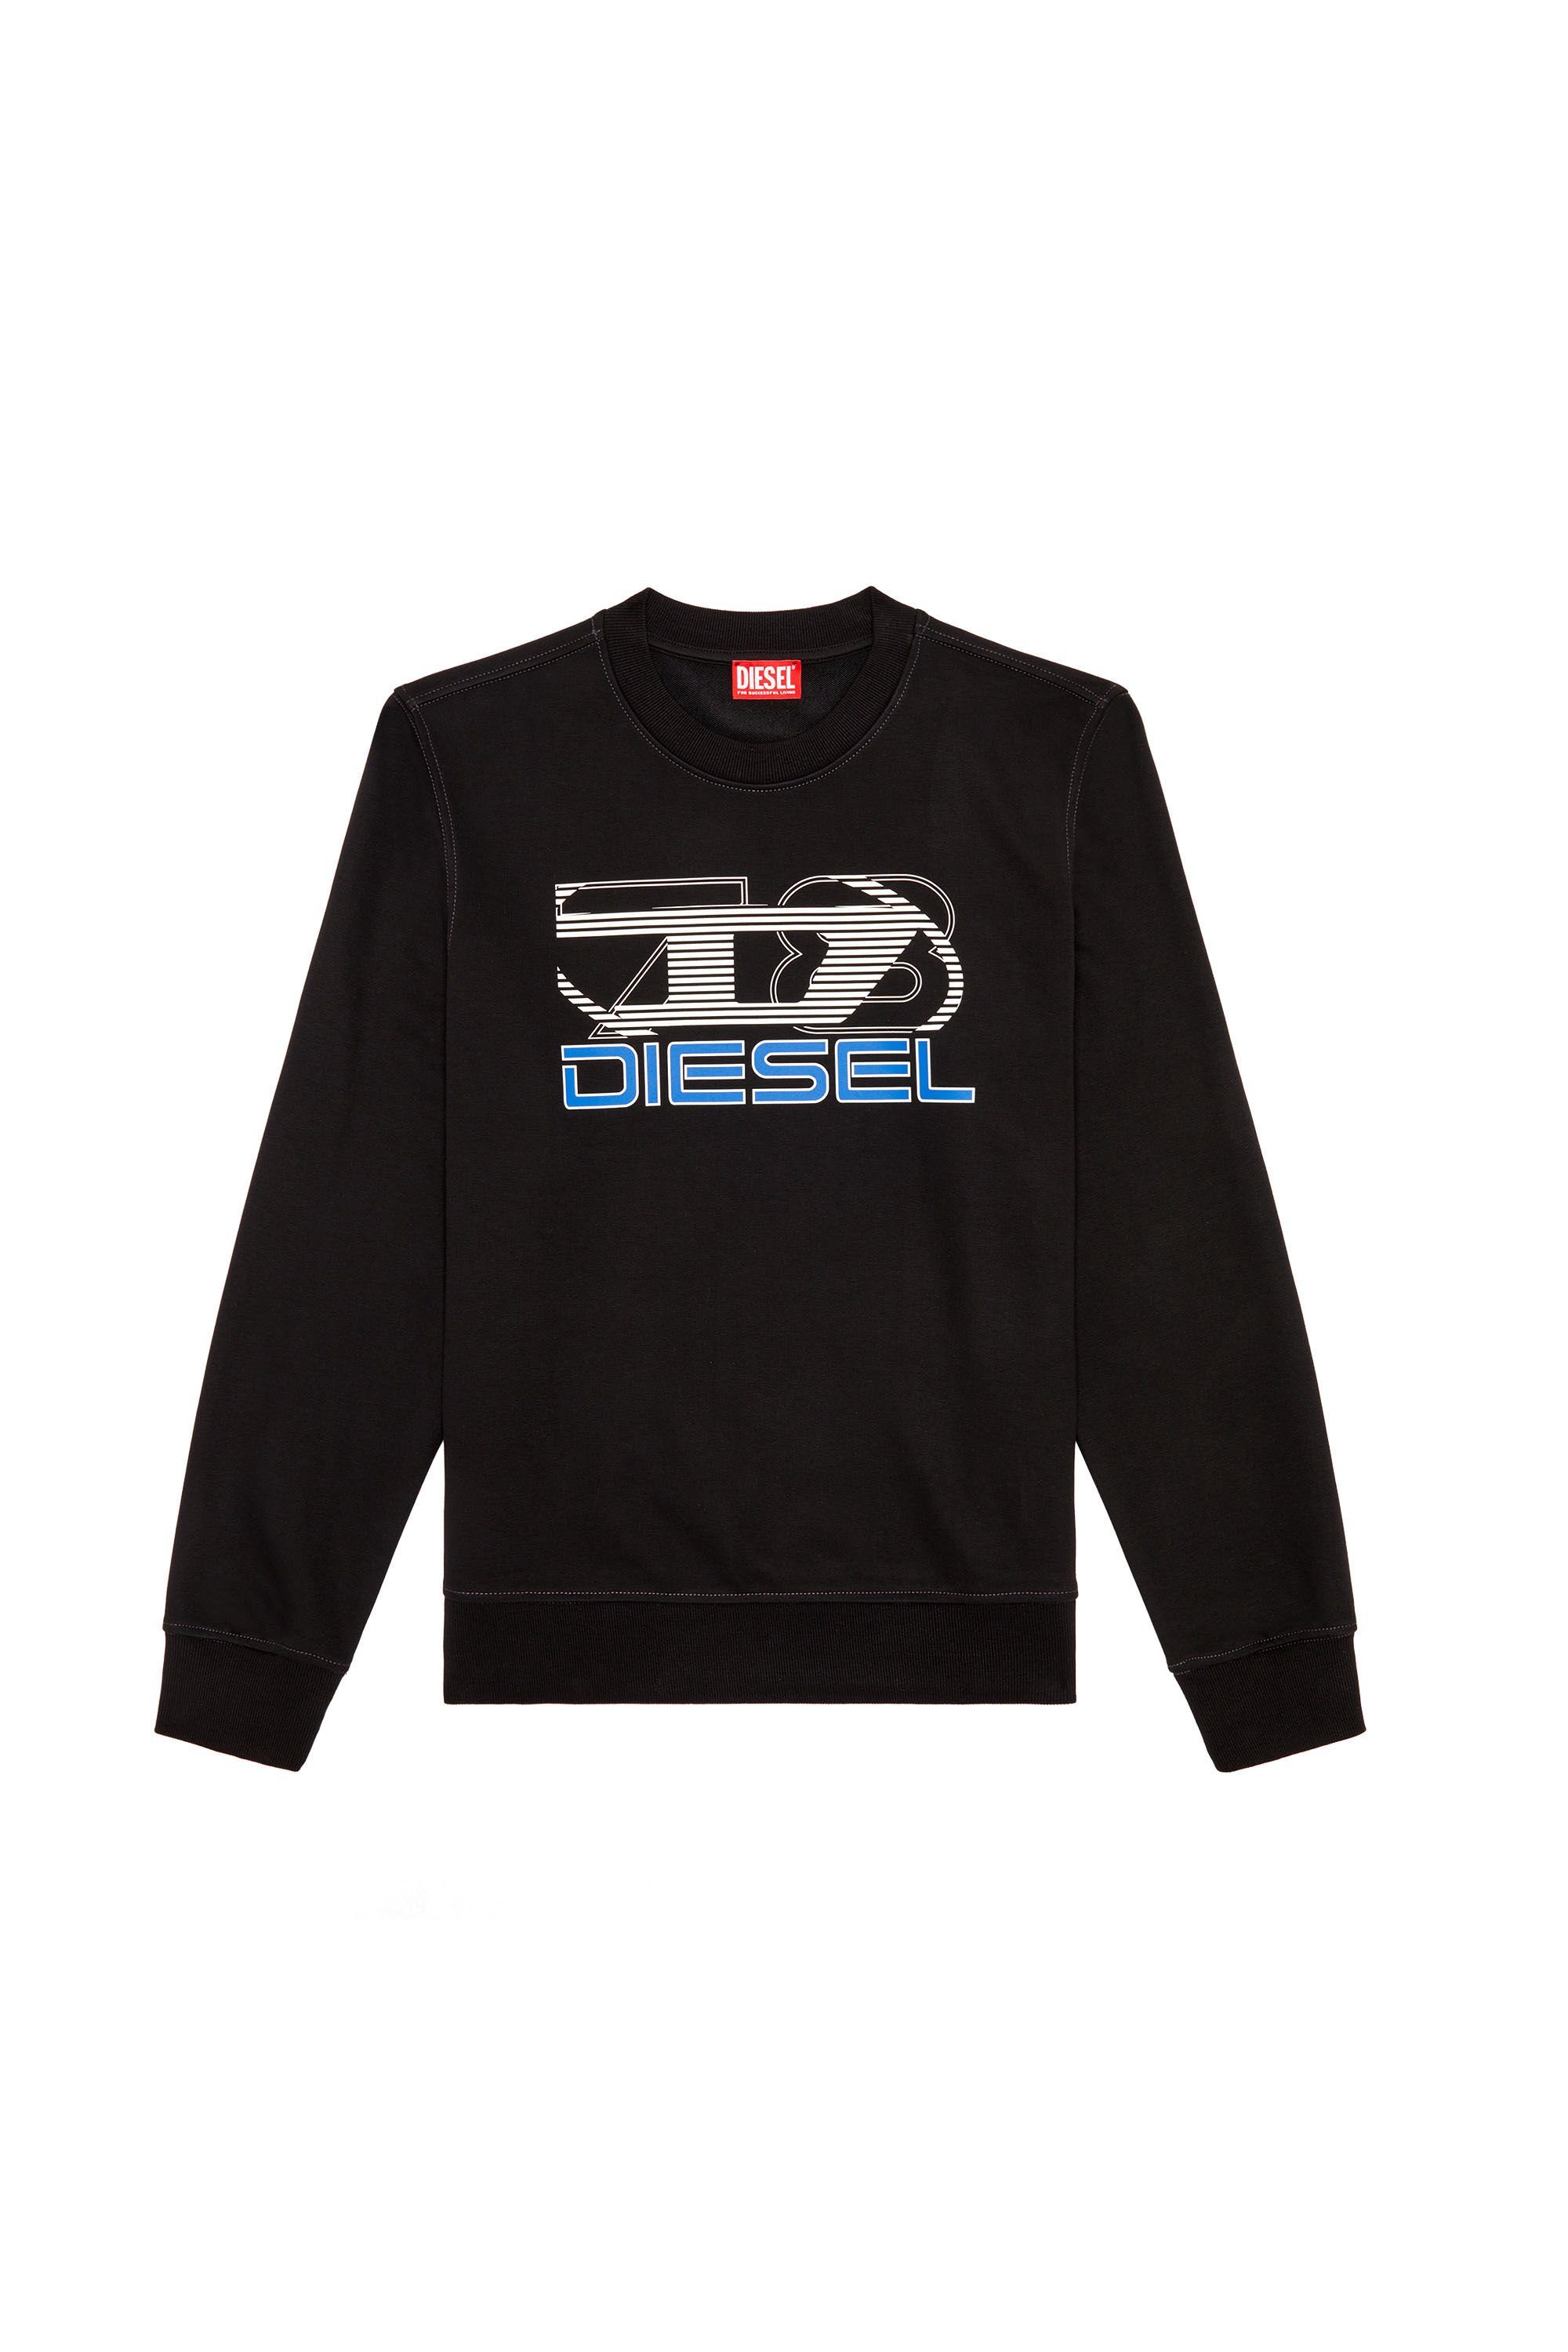 Diesel - S-GINN-K43, Man Sweatshirt with logo print in Black - Image 2